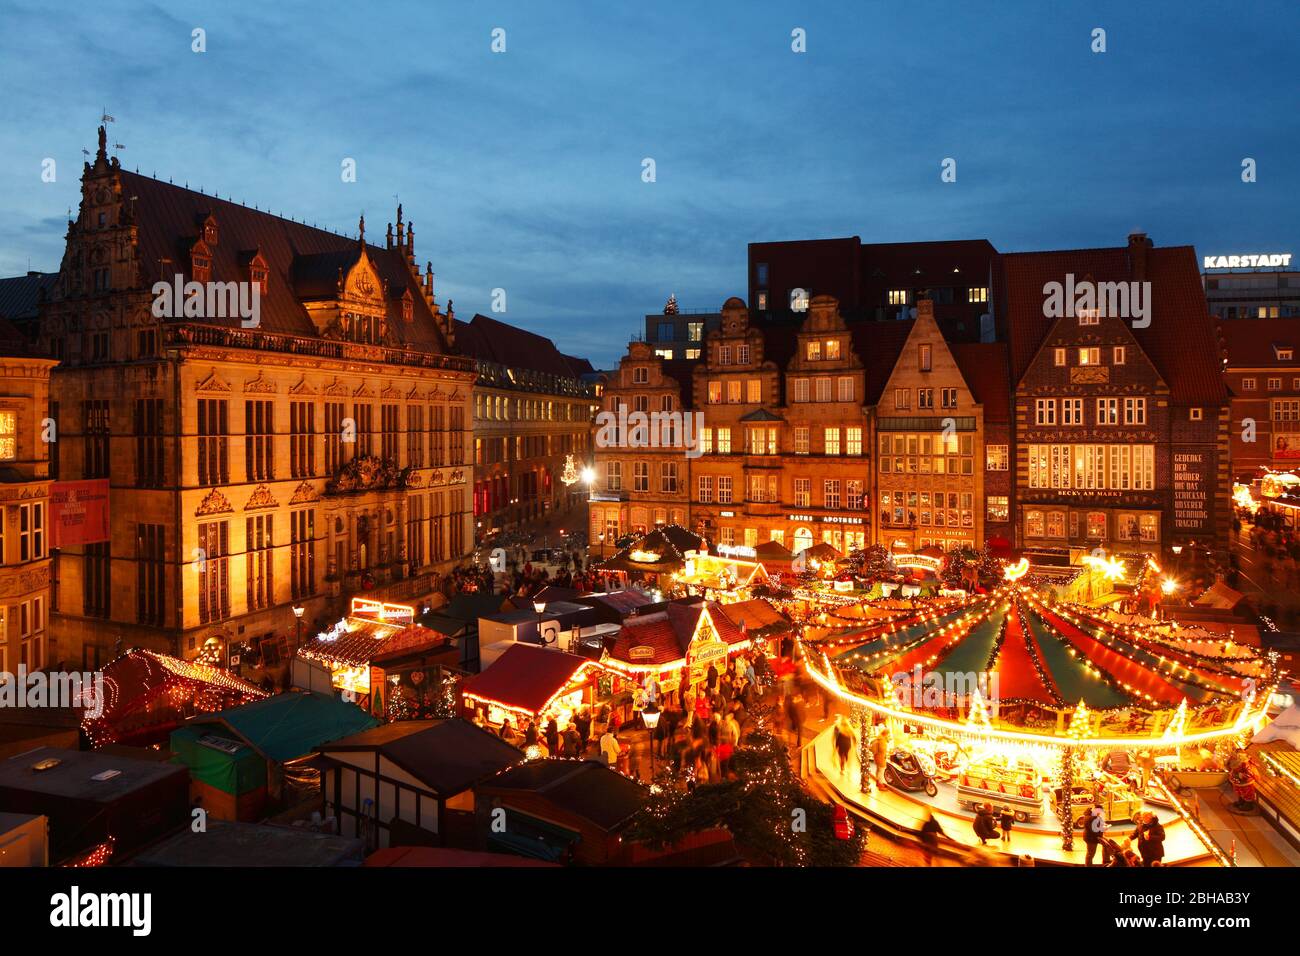 Weihnachtsmarkt mit Haus Schütting und Marktplatz-Westseite bei Abenddämmerung, Bremen, Deutschland, Europa Stock Photo